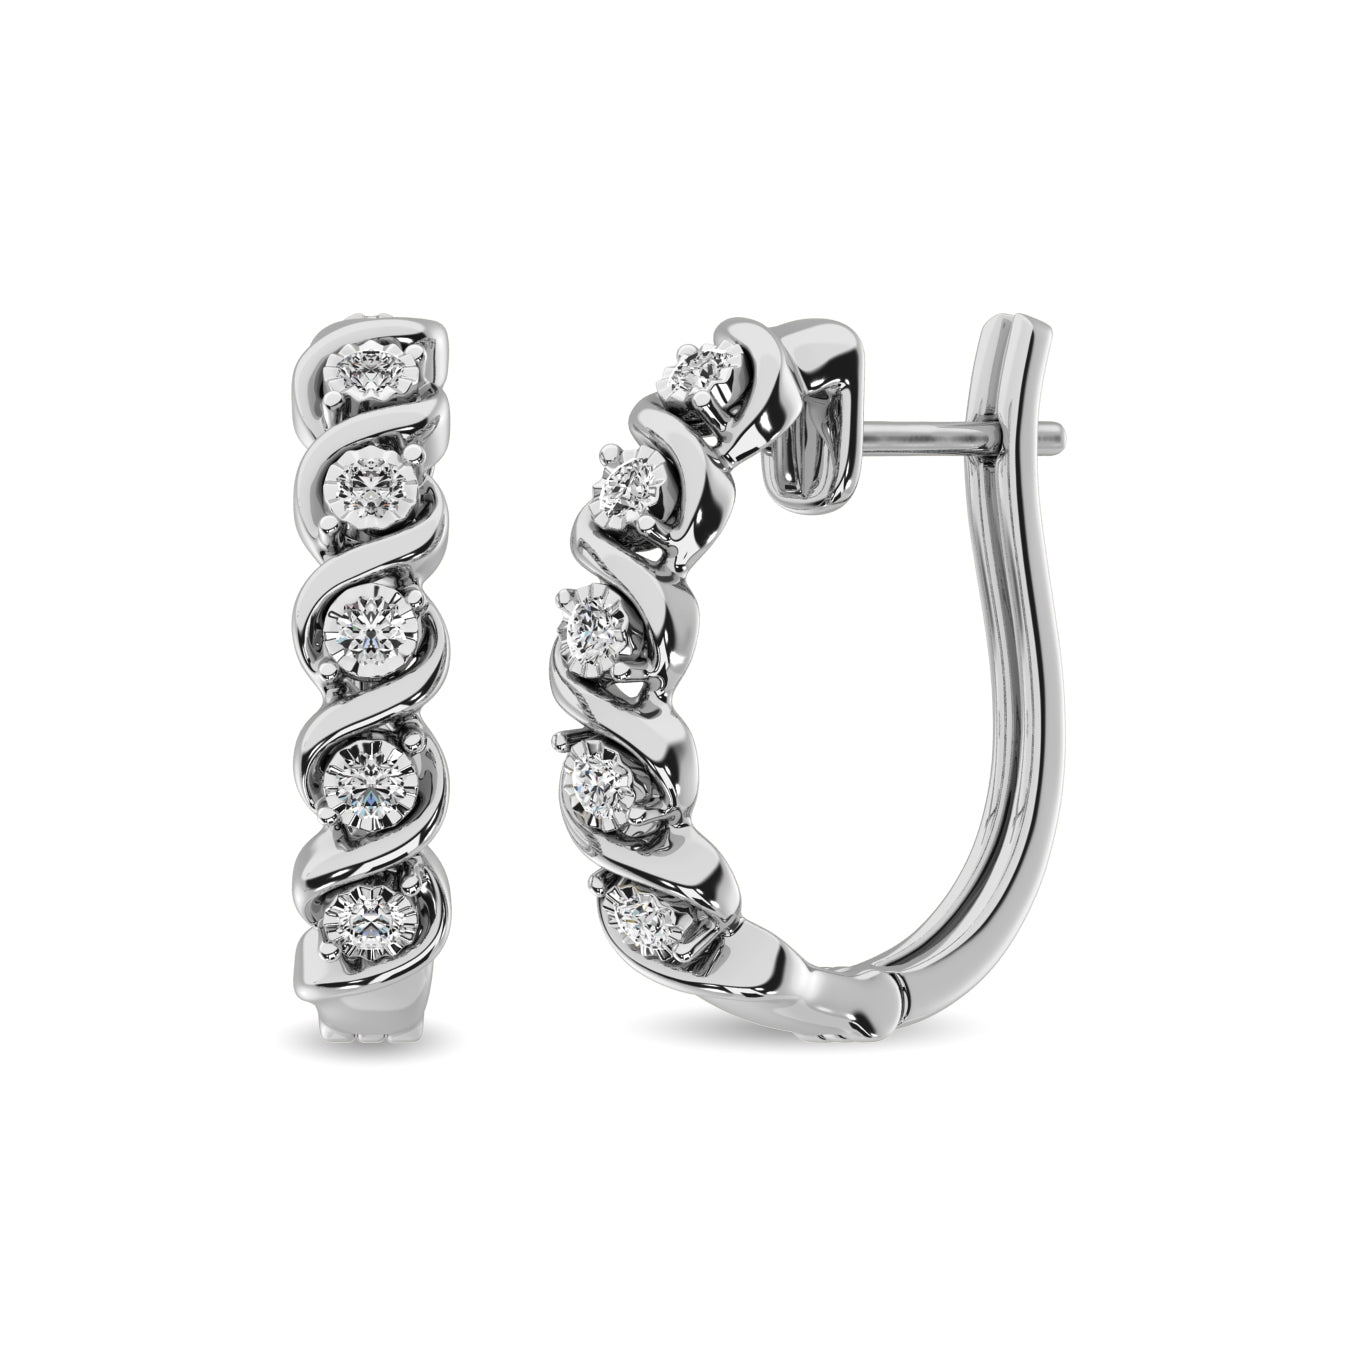 Diamond Hoop Earrings 1/10 ct tw in Sterling Silver